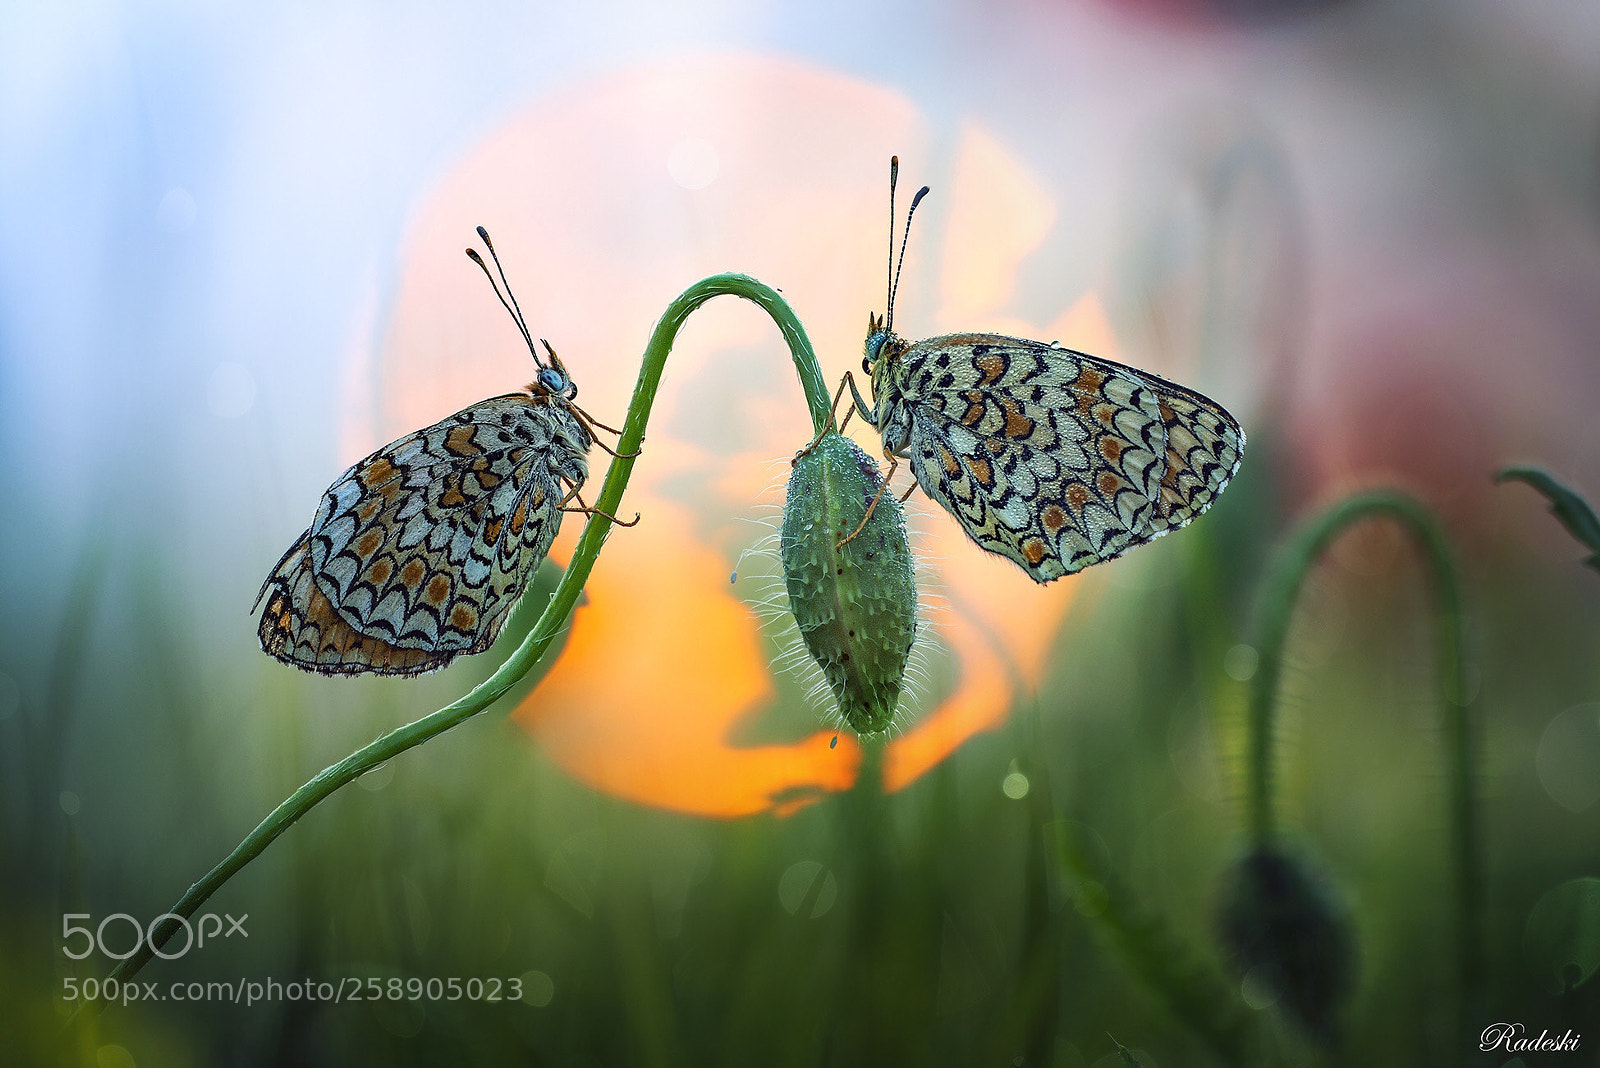 Nikon D800E sample photo. The butterfly garden photography